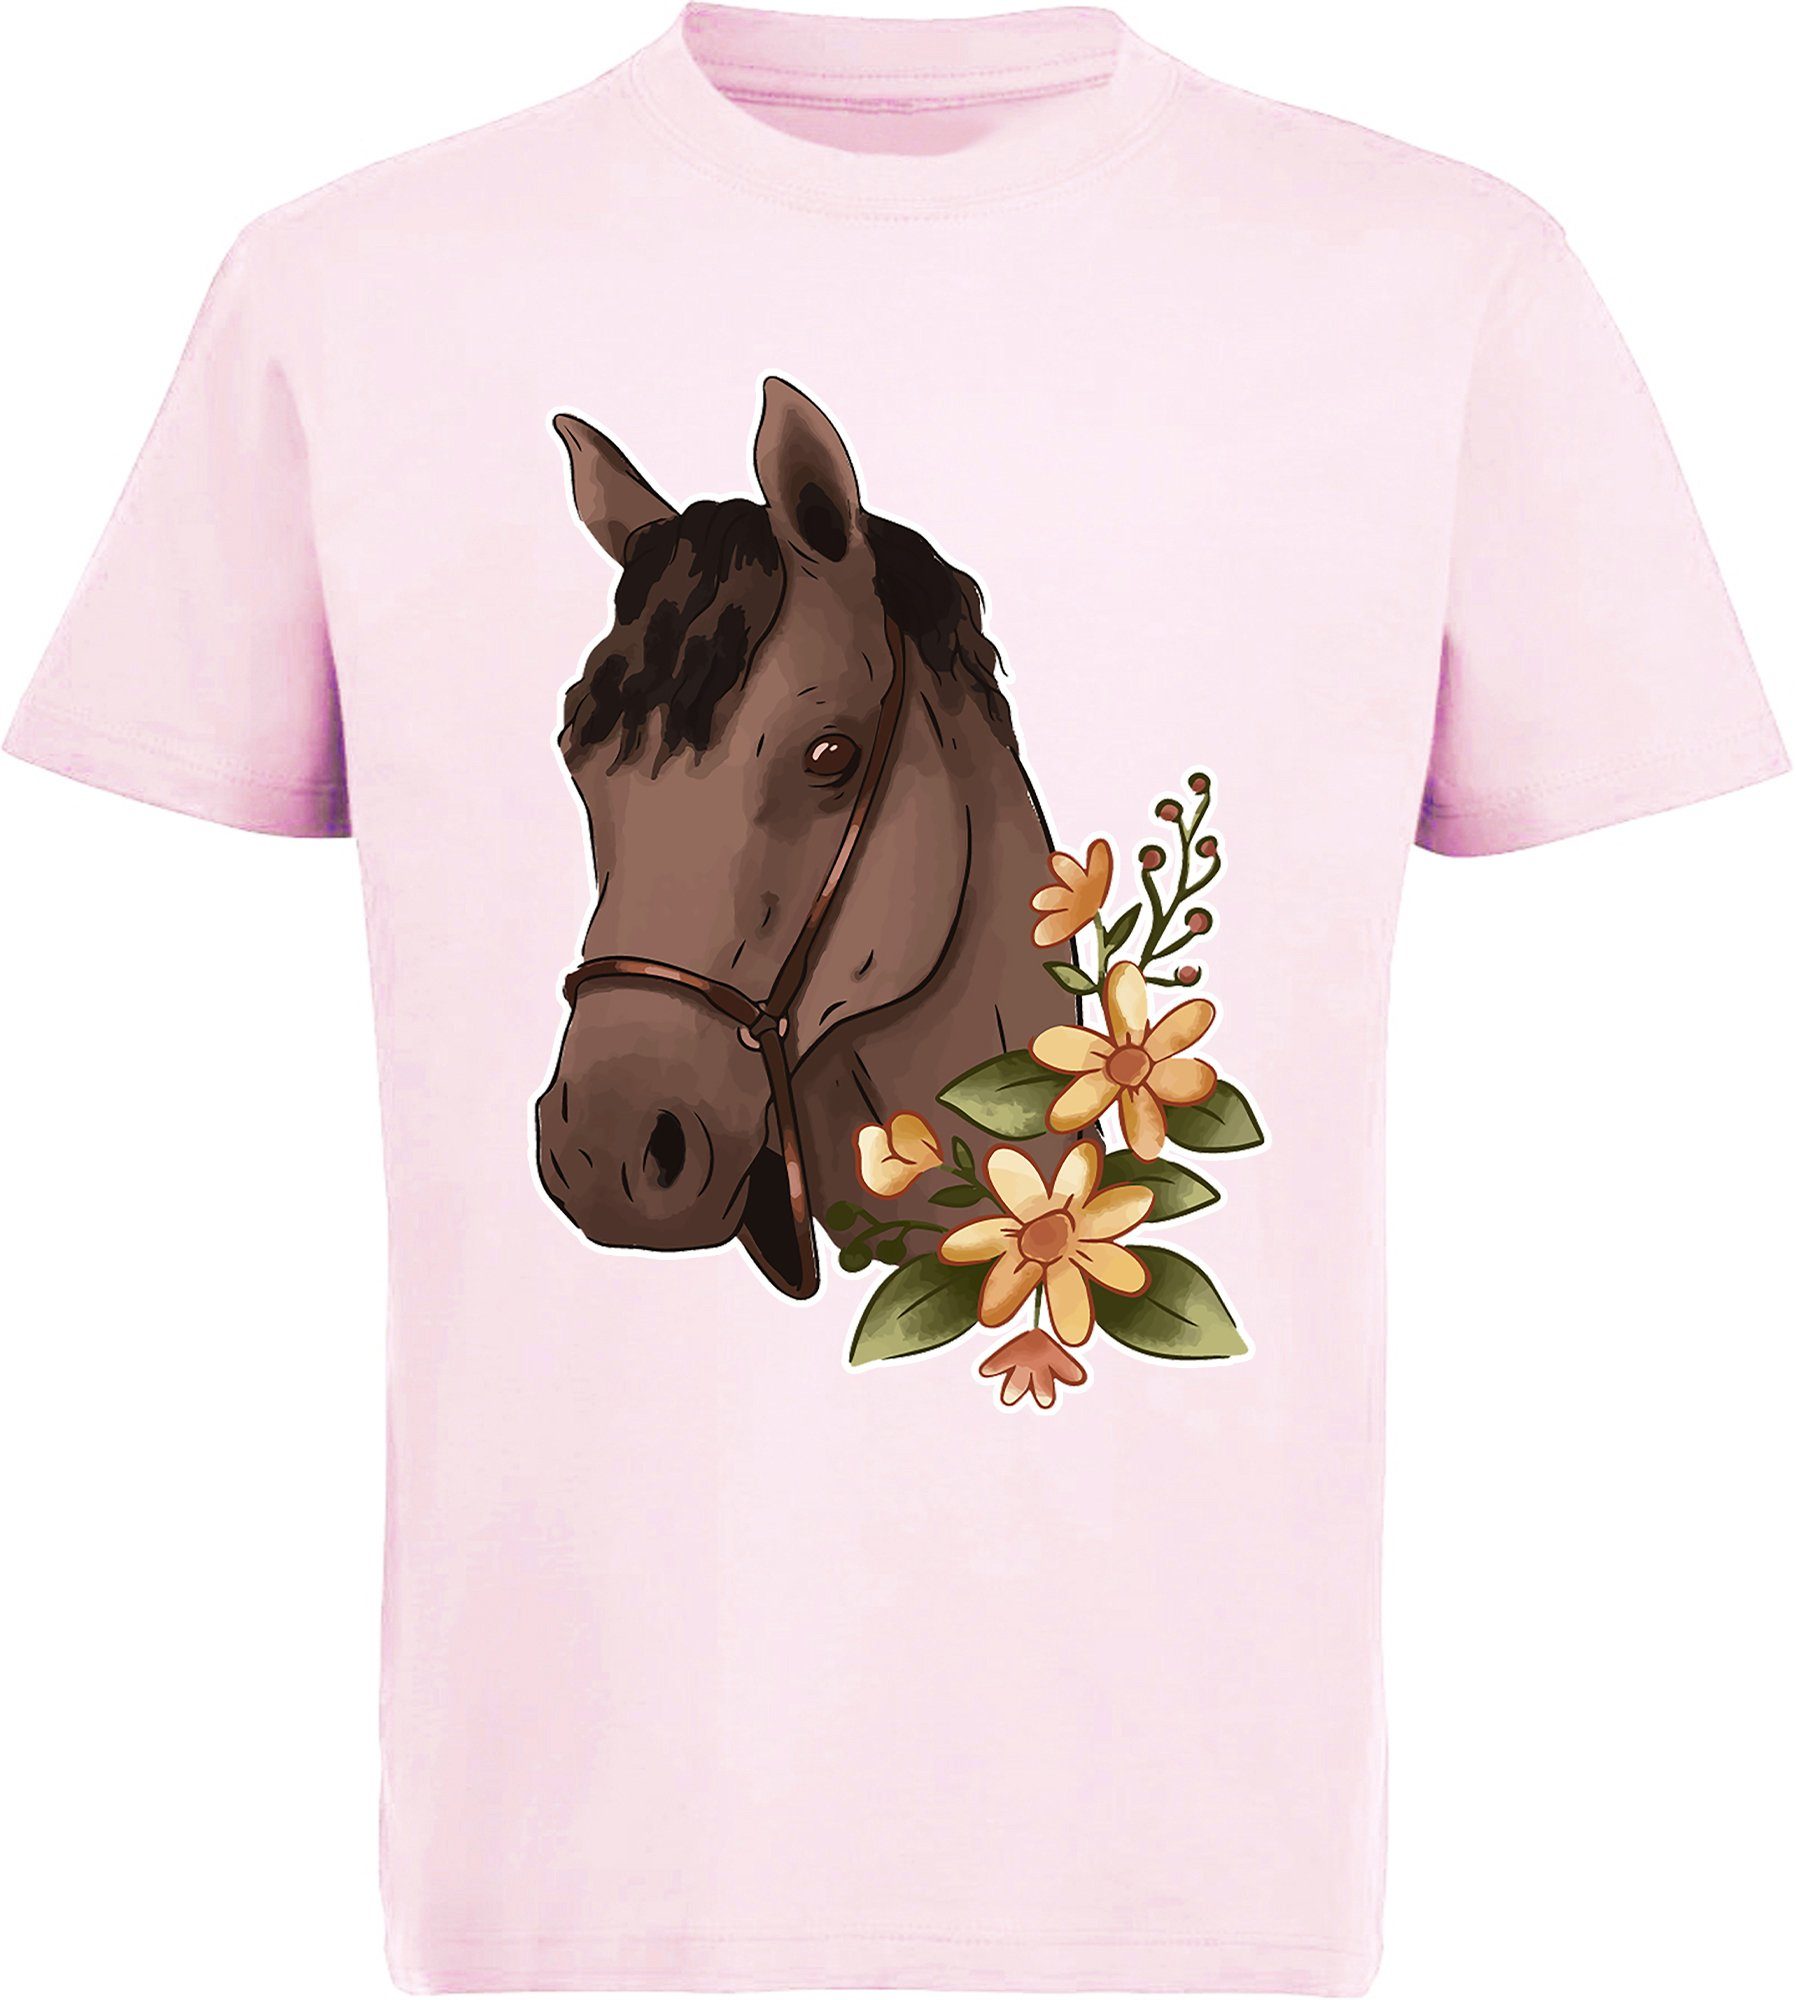 T-Shirt Baumwollshirt Mädchen und Print-Shirt i182 bedrucktes MyDesign24 Kinder Aufdruck, mit Blumen Pferdekopf Brauner -